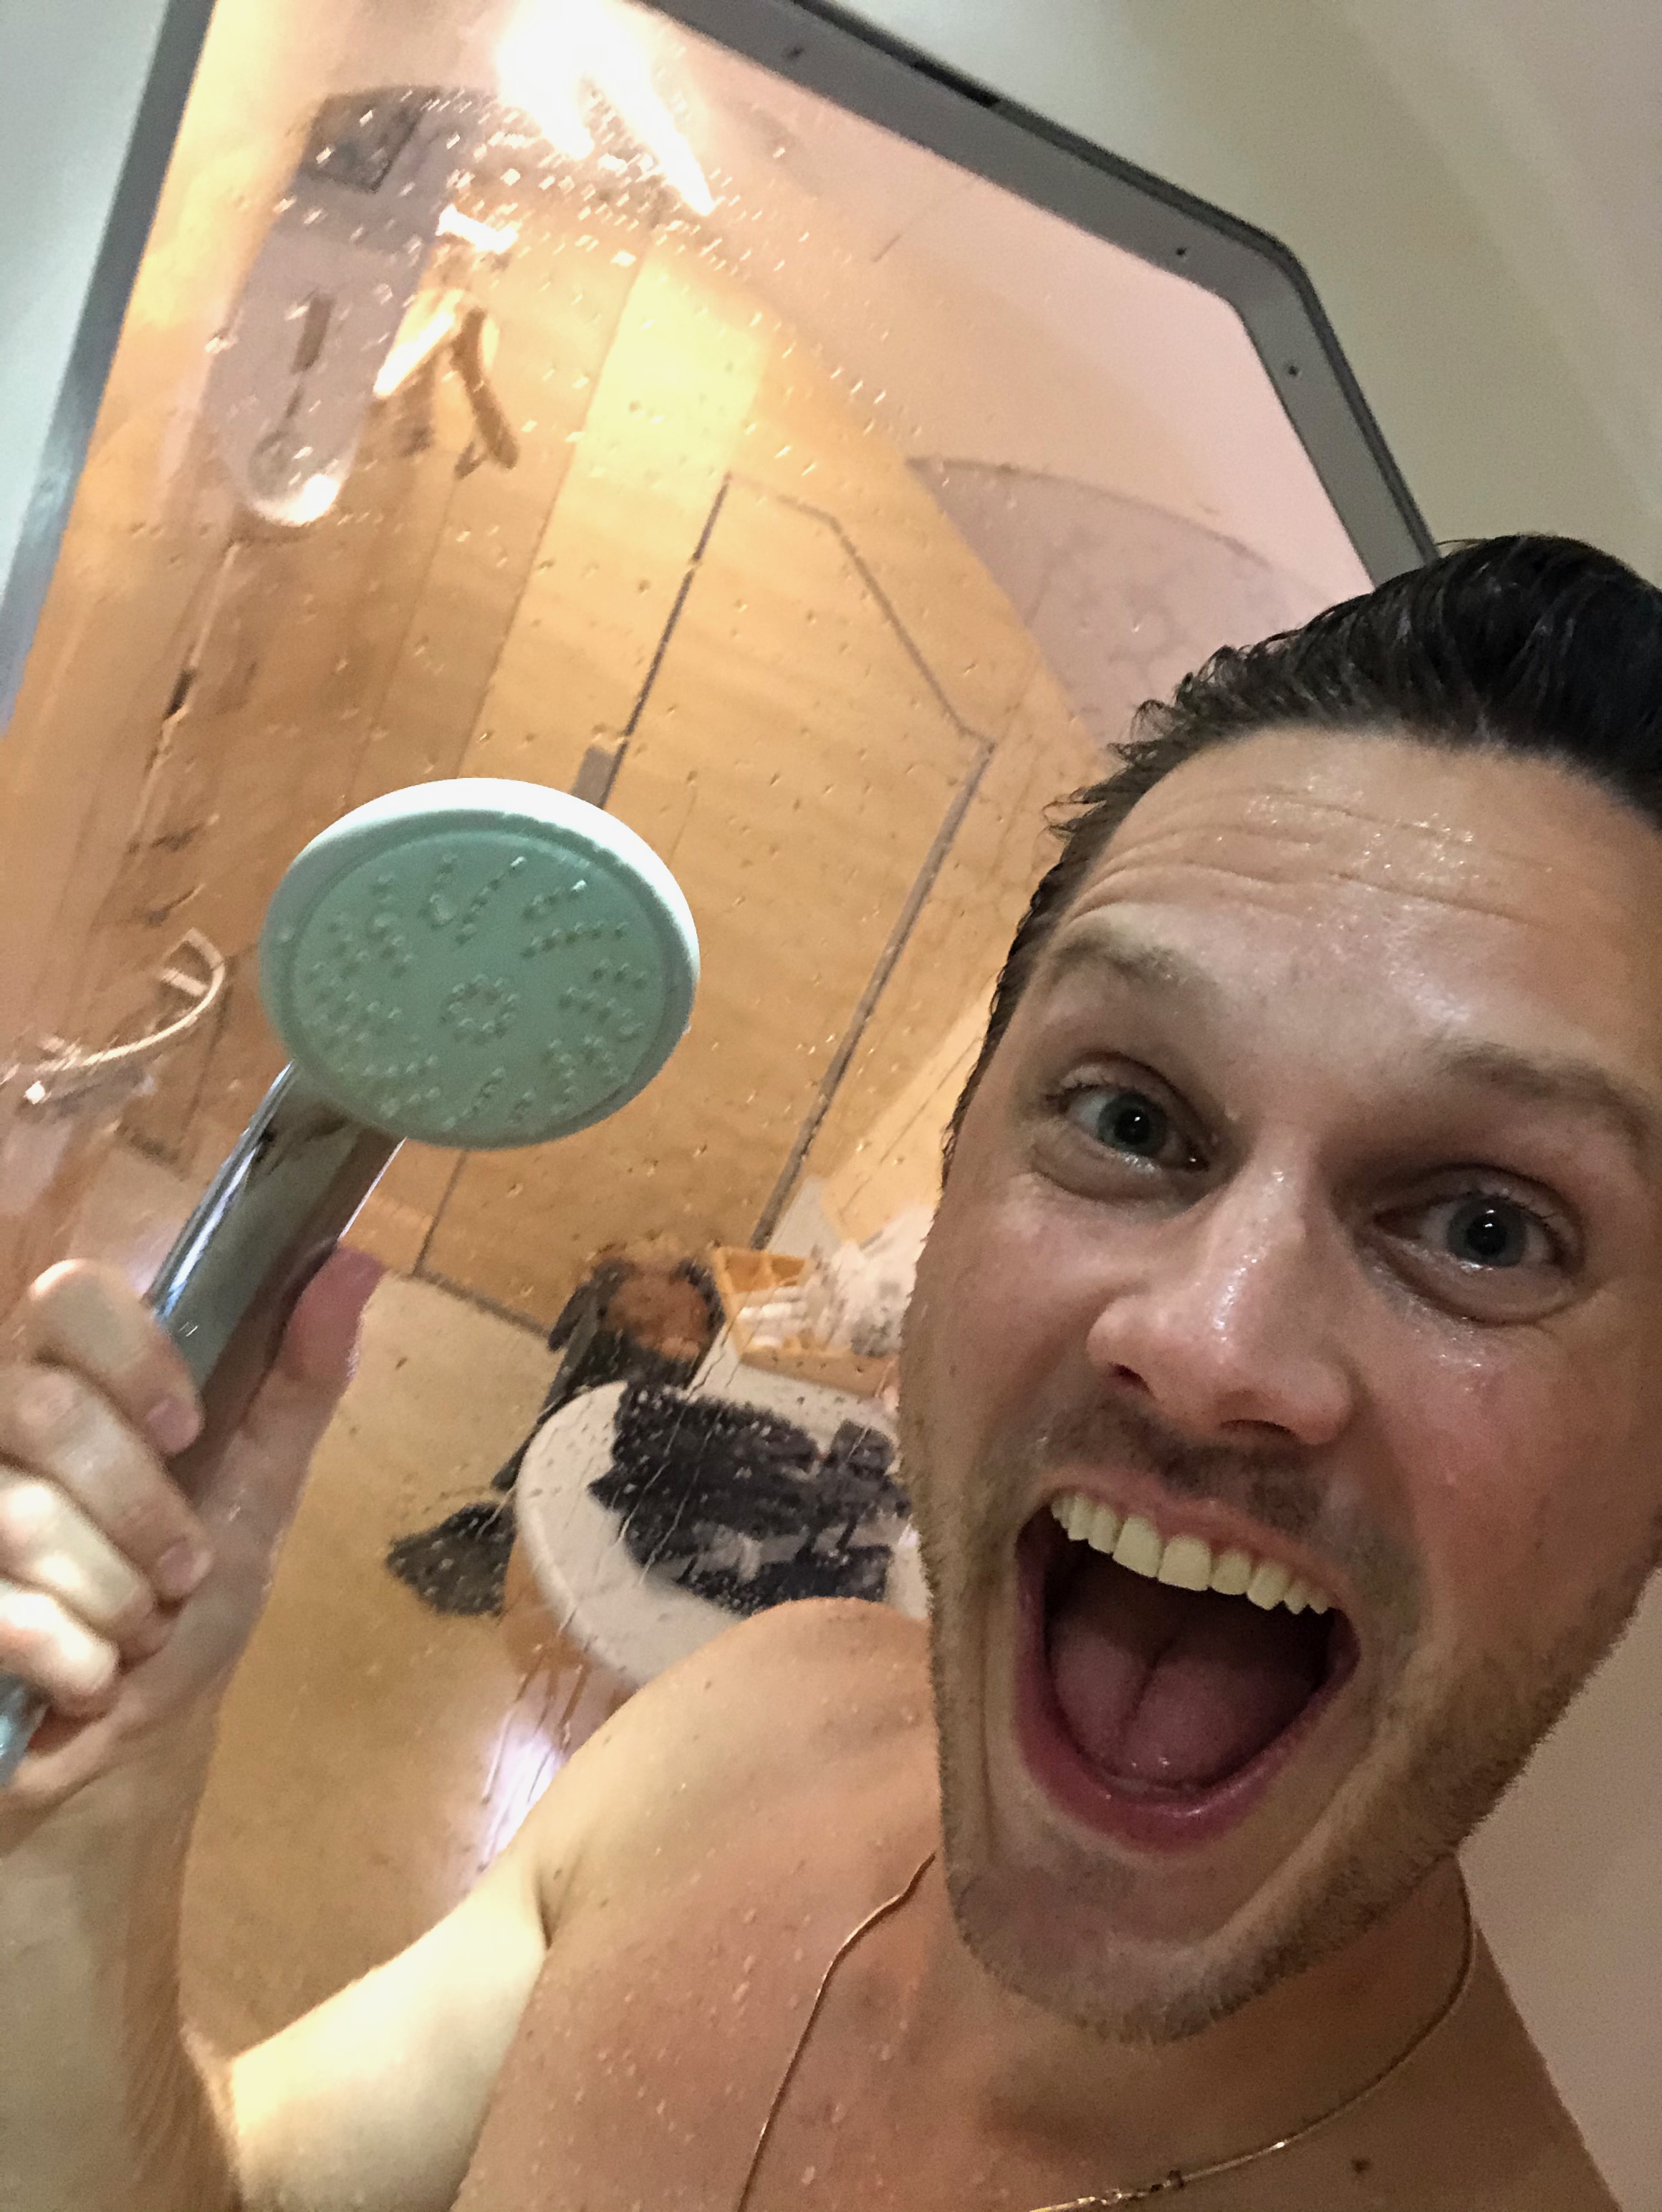 a man taking a selfie in a shower